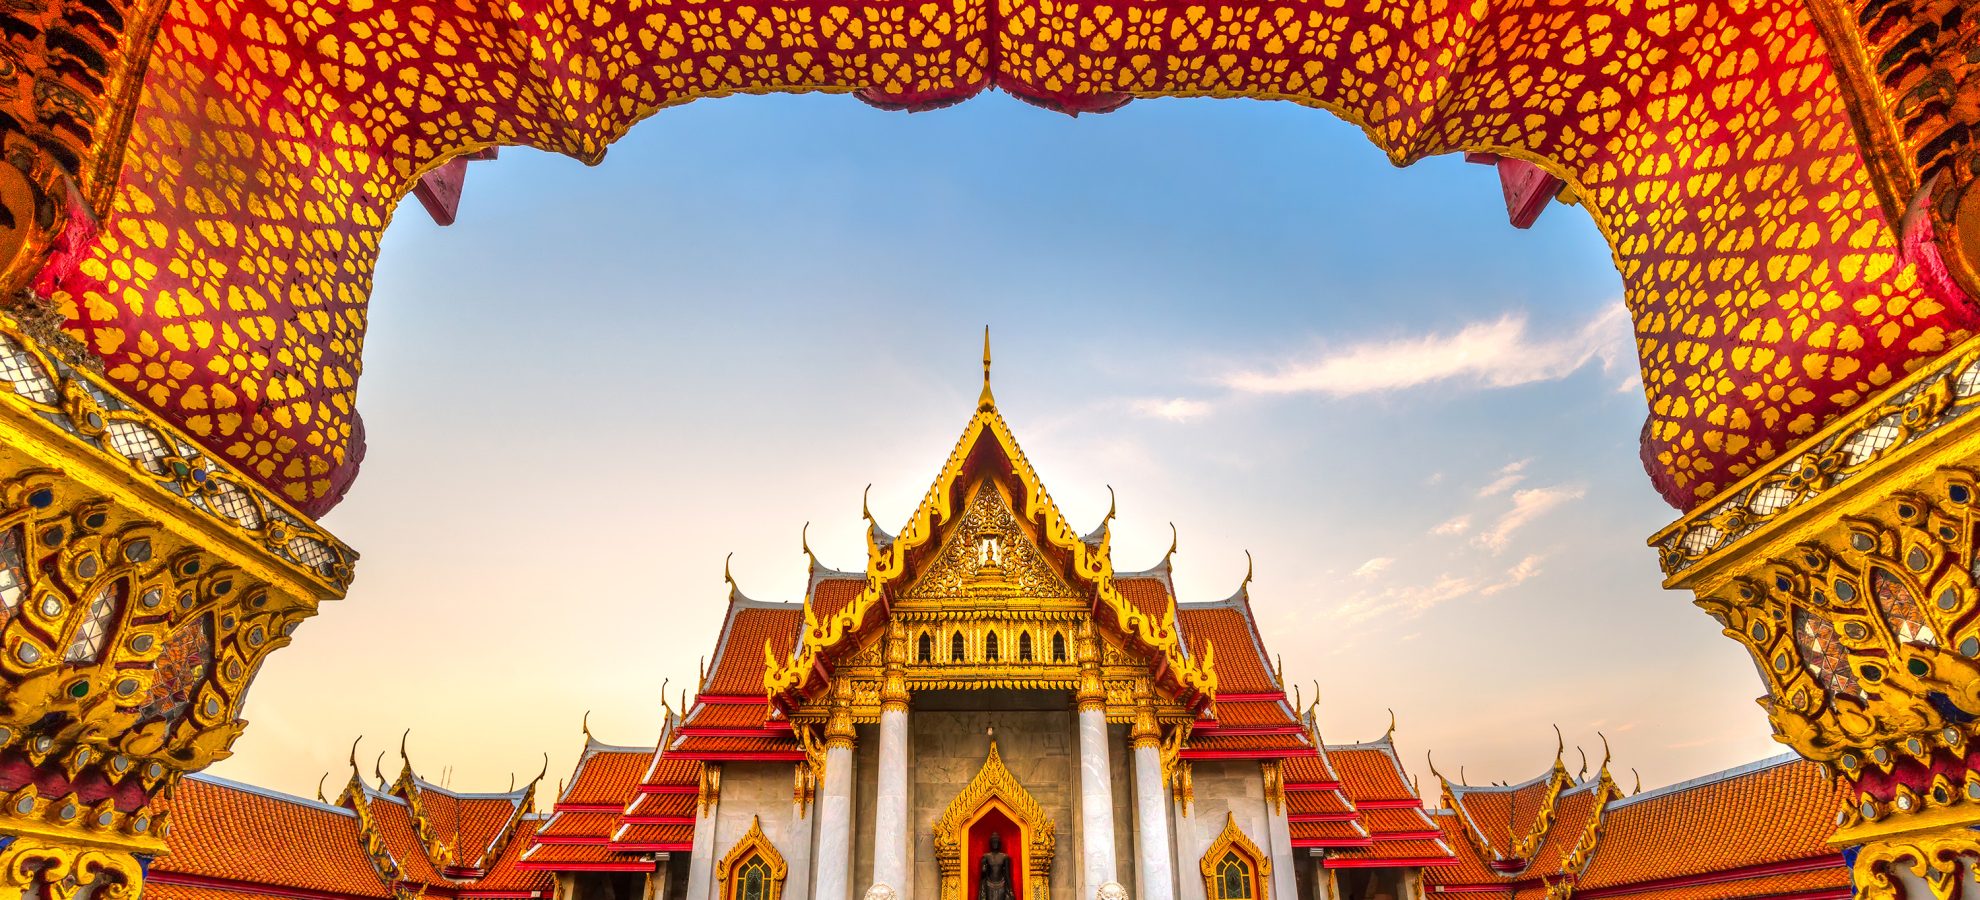 Wat Benchamabophit Dusit wanaram. Bangkok, Thailandia.